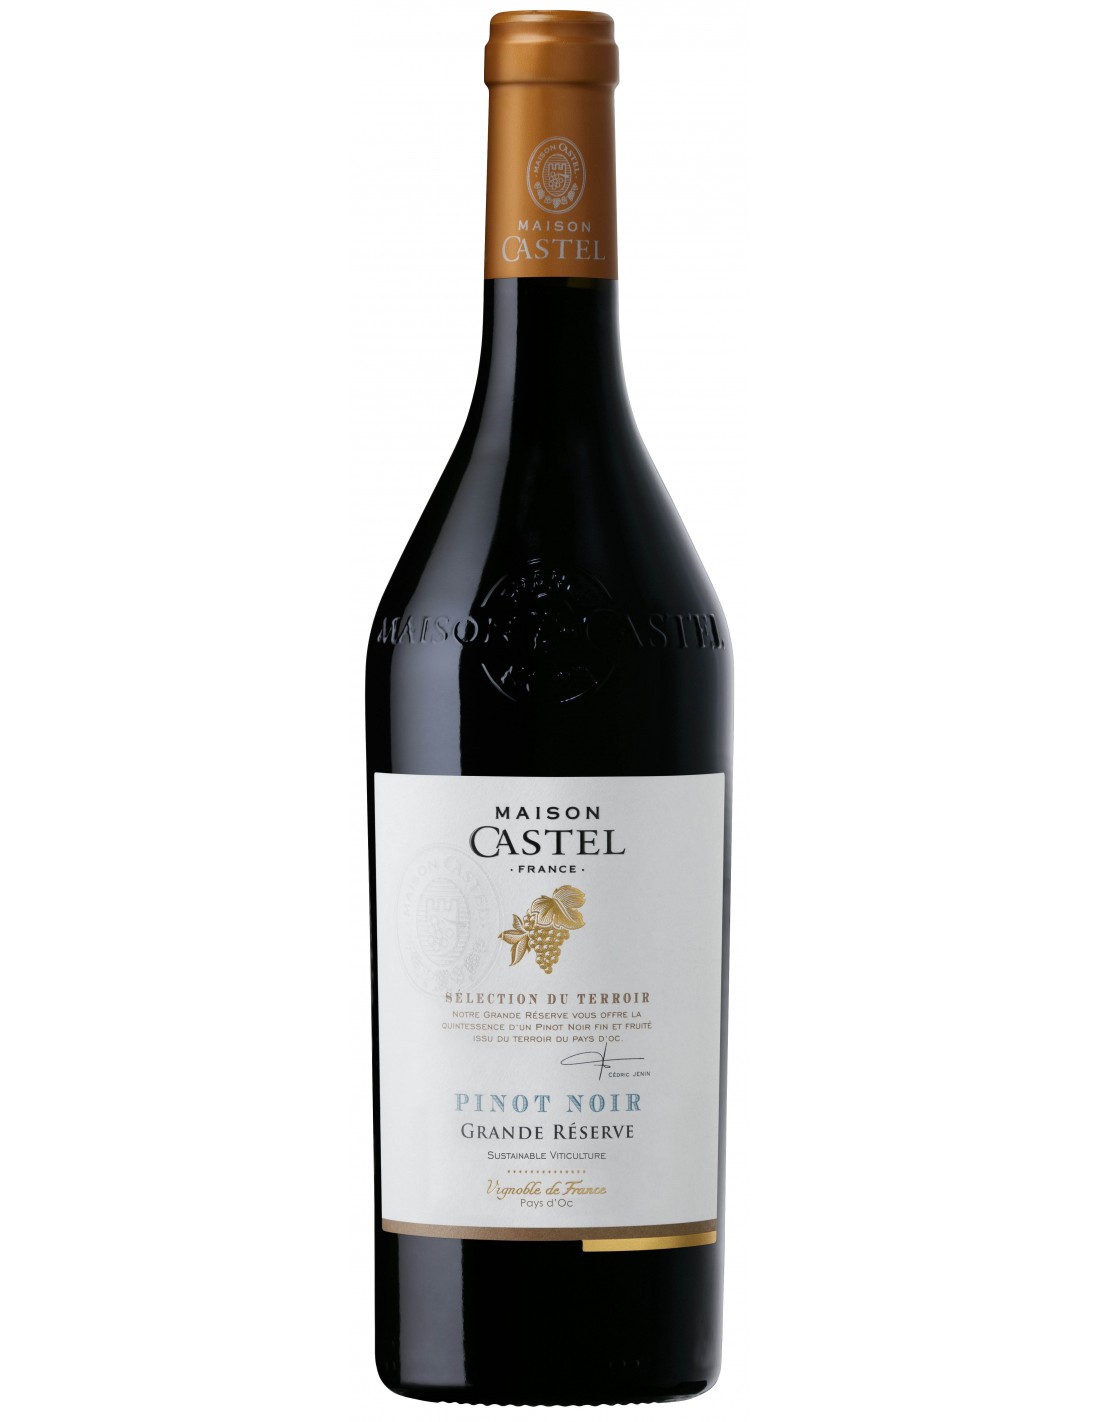 Vin rosu sec, Pinot Noir, Maison Castel Grande Réserve Pays d’Oc, 13.5% alc., 0.75L, Franta alcooldiscount.ro